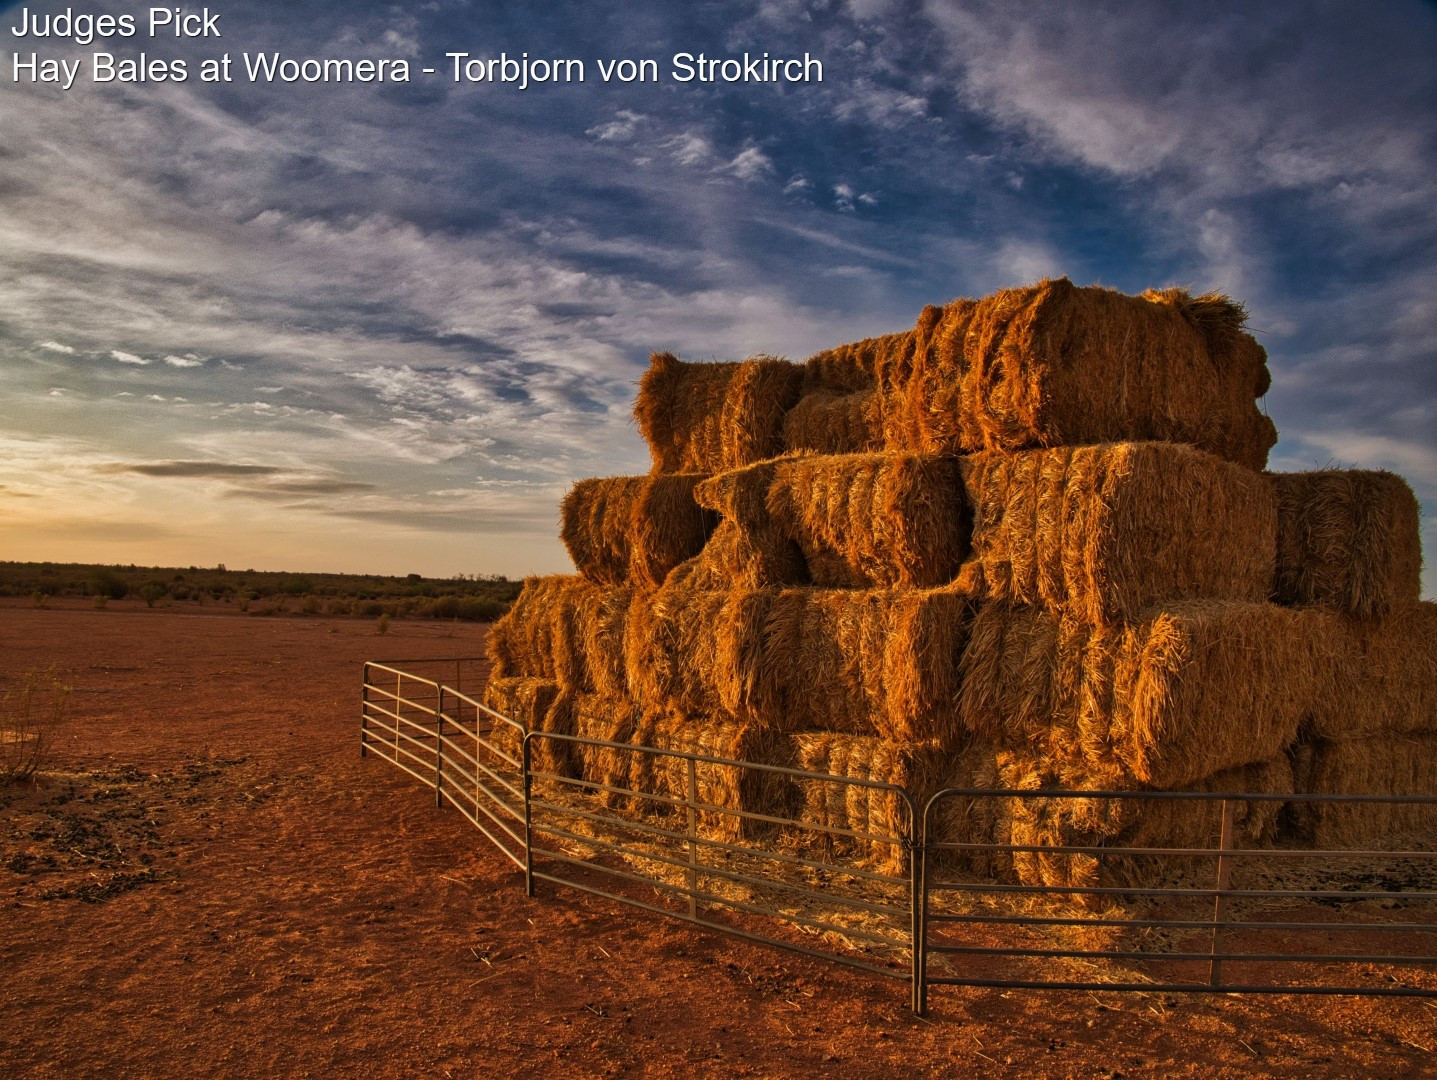 Hay-bales-at-Woomera